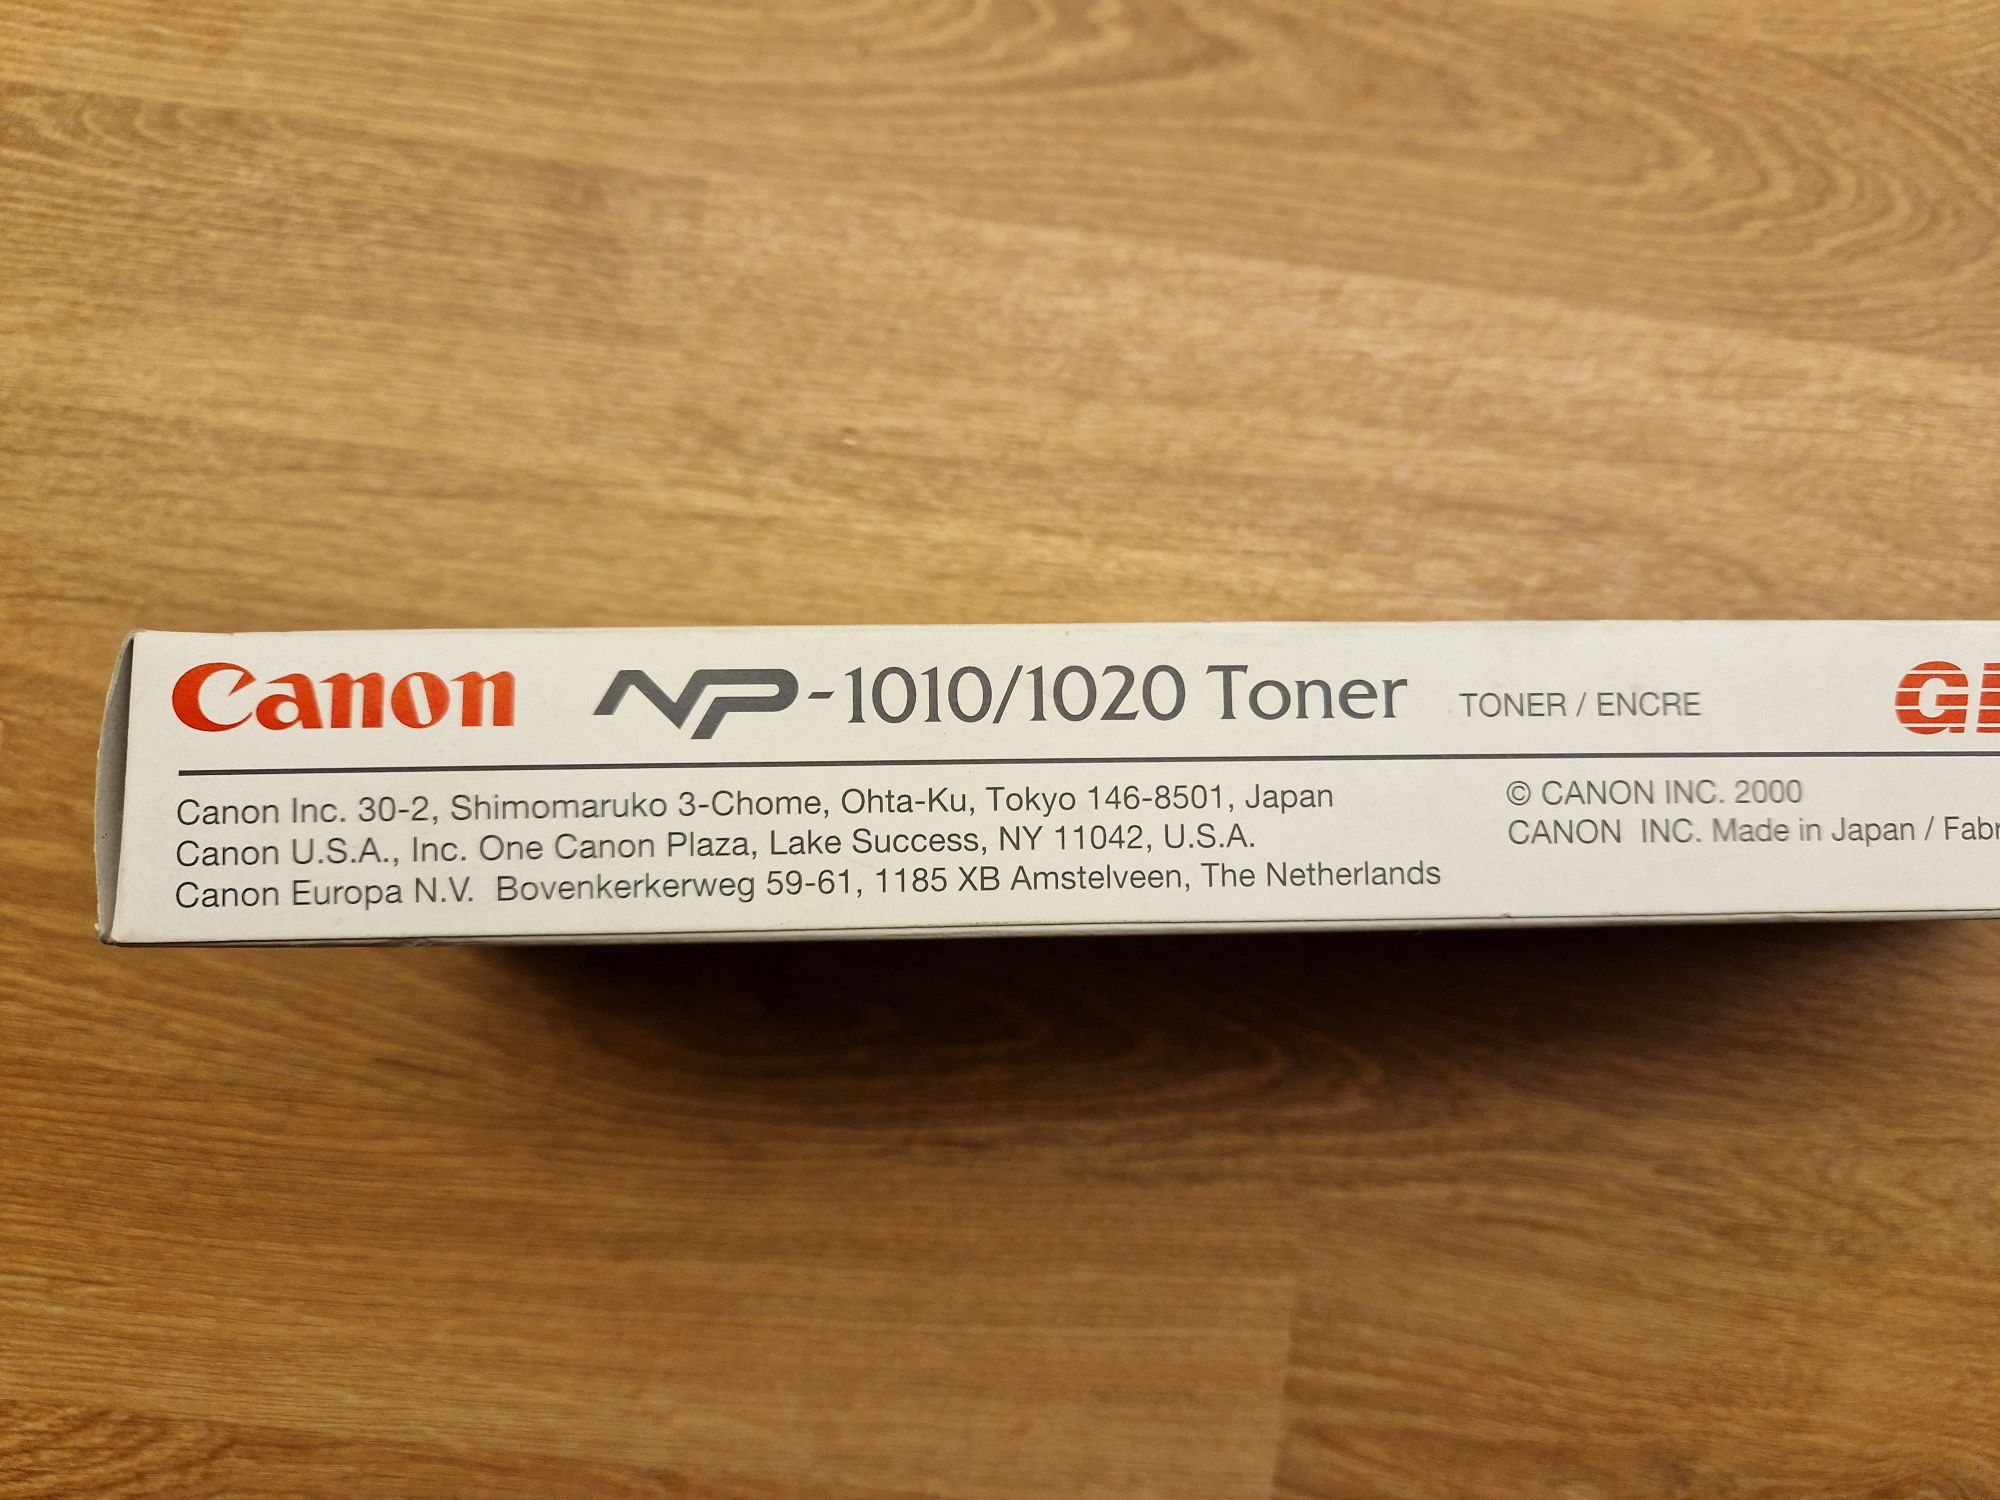 2 tonery toner Canon np-1010 i np-1020